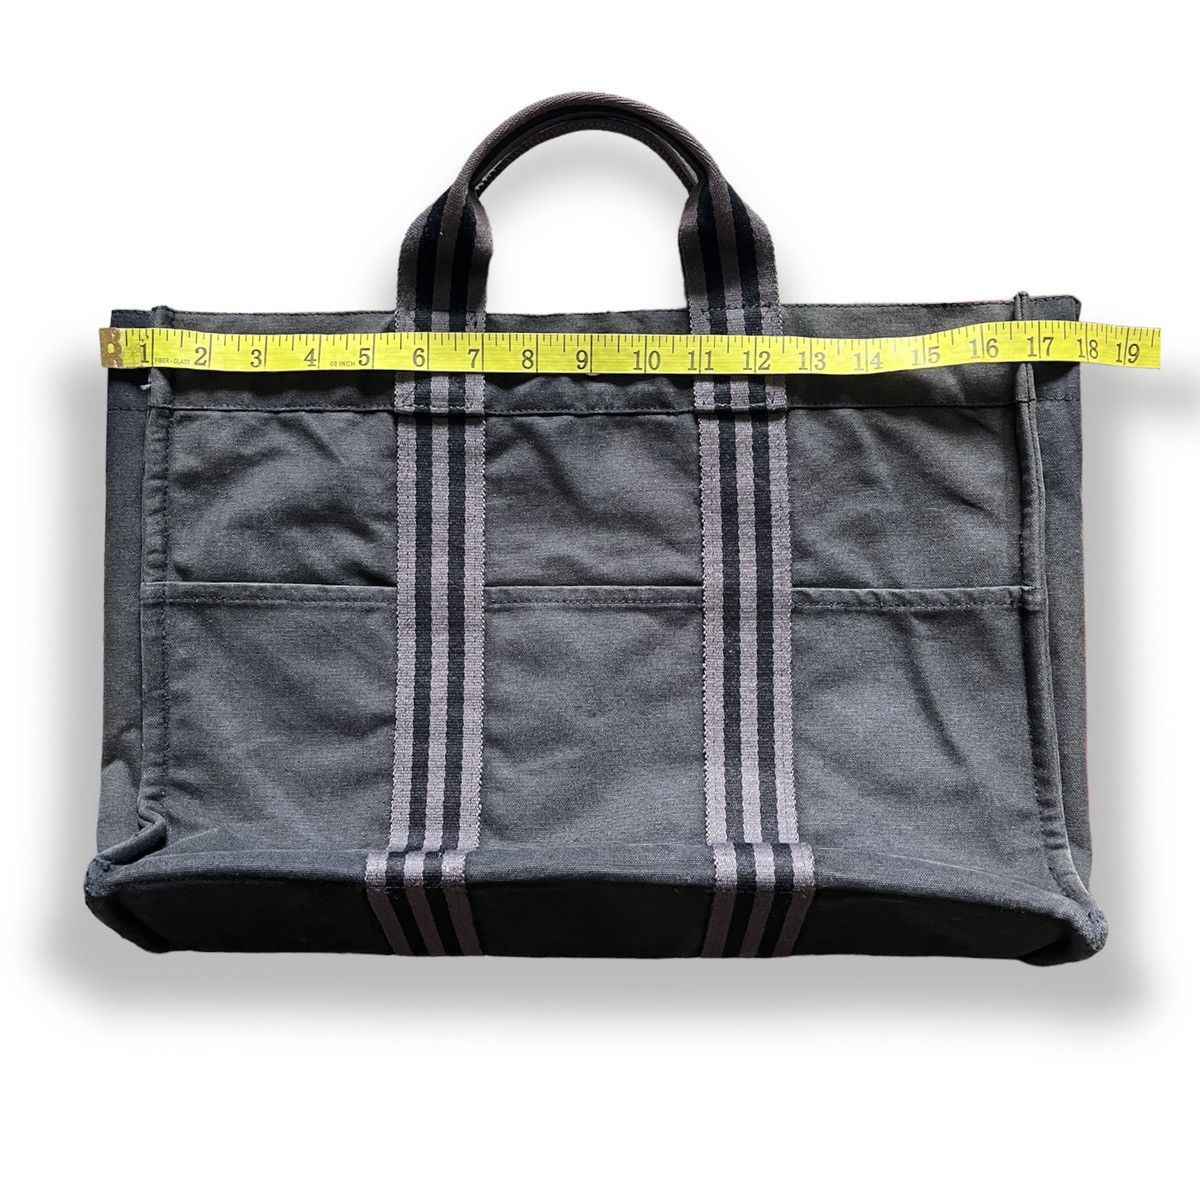 Hermes Birkin Tote Bag Waterproof - 2